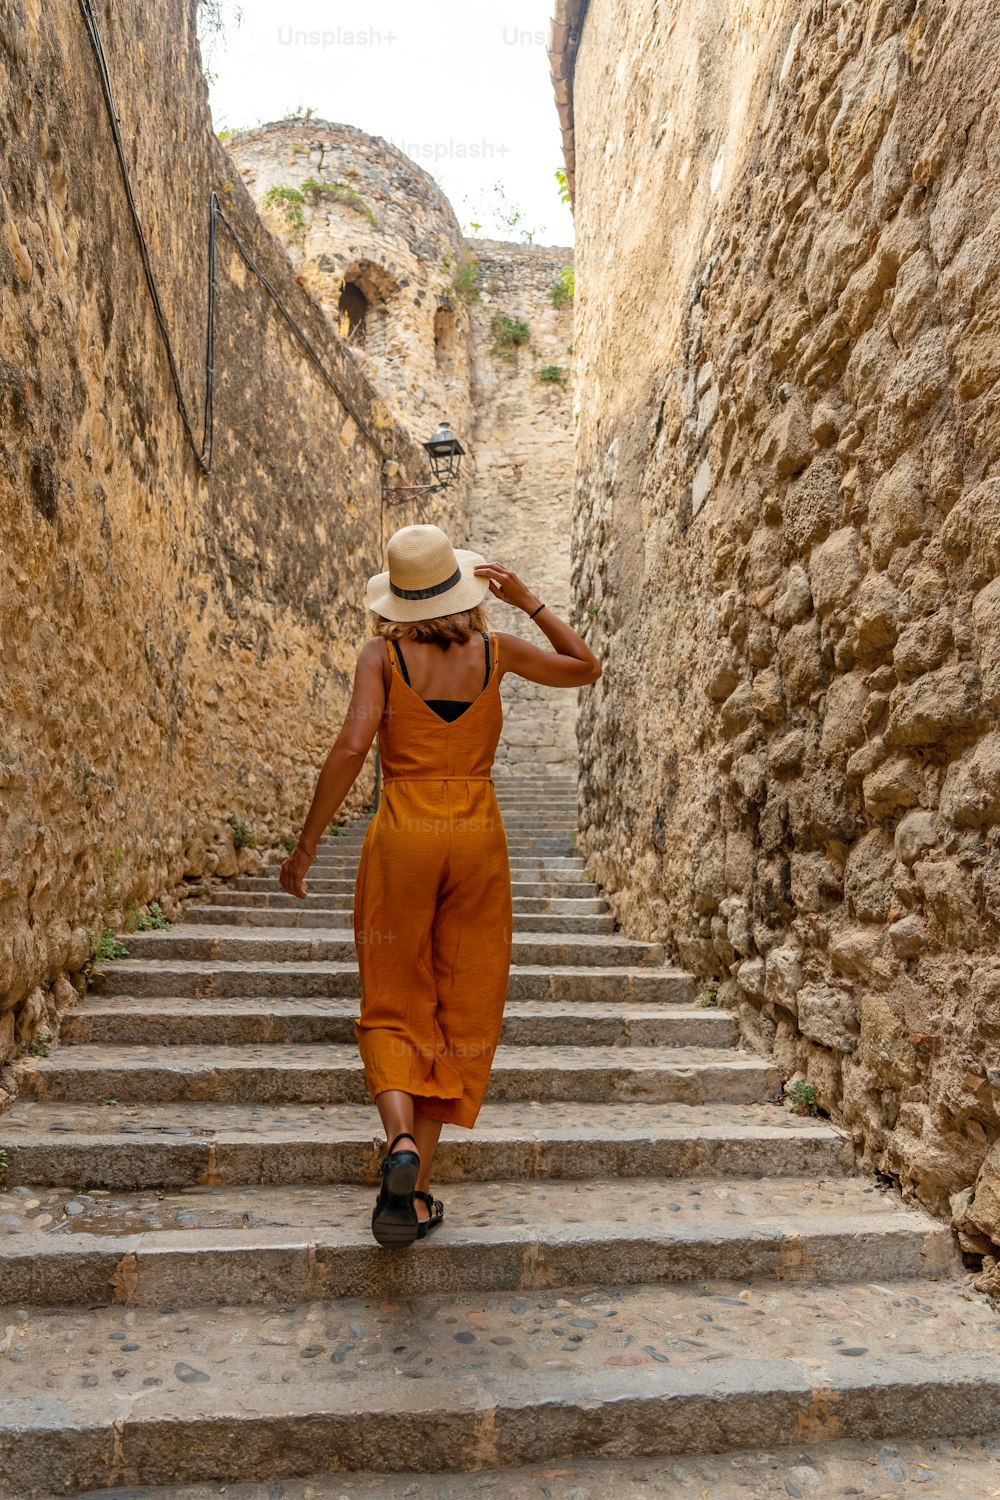 Girona ciudad medieval, un joven turista con sombrero en las escaleras de las calles del centro histórico, Costa Brava de Cataluña en el Mediterráneo. España